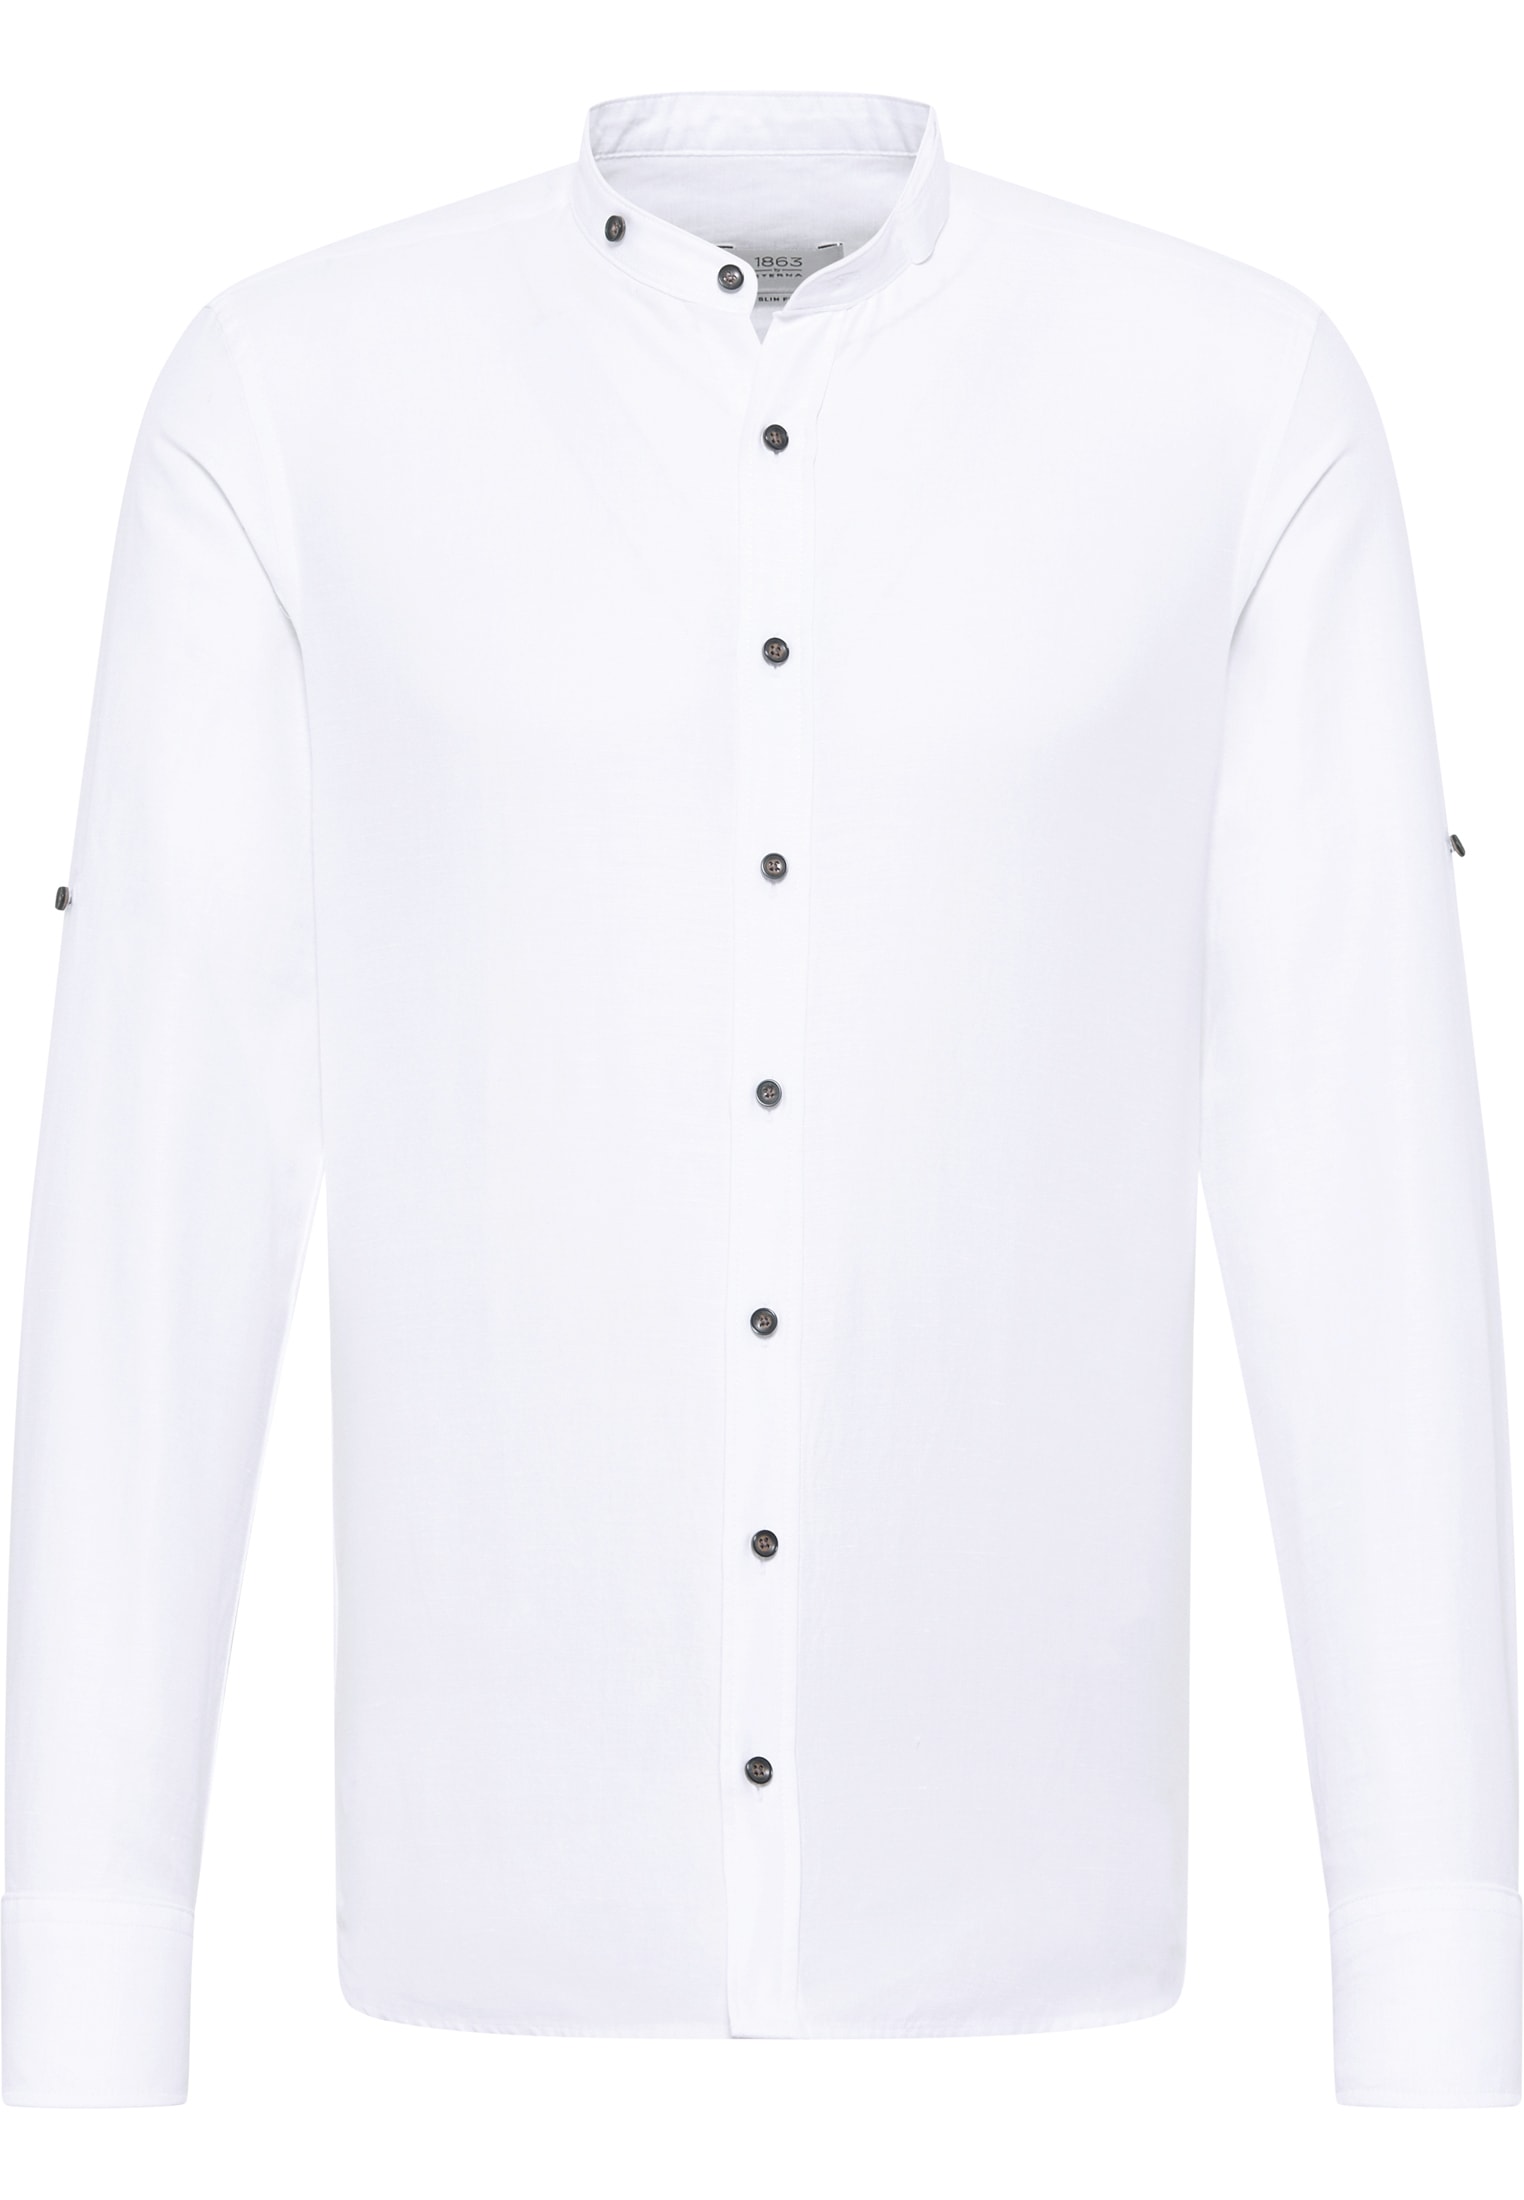 weiß 40 SLIM FIT weiß Shirt unifarben | | Linen 1SH12593-00-01-40-1/1 | in Langarm |